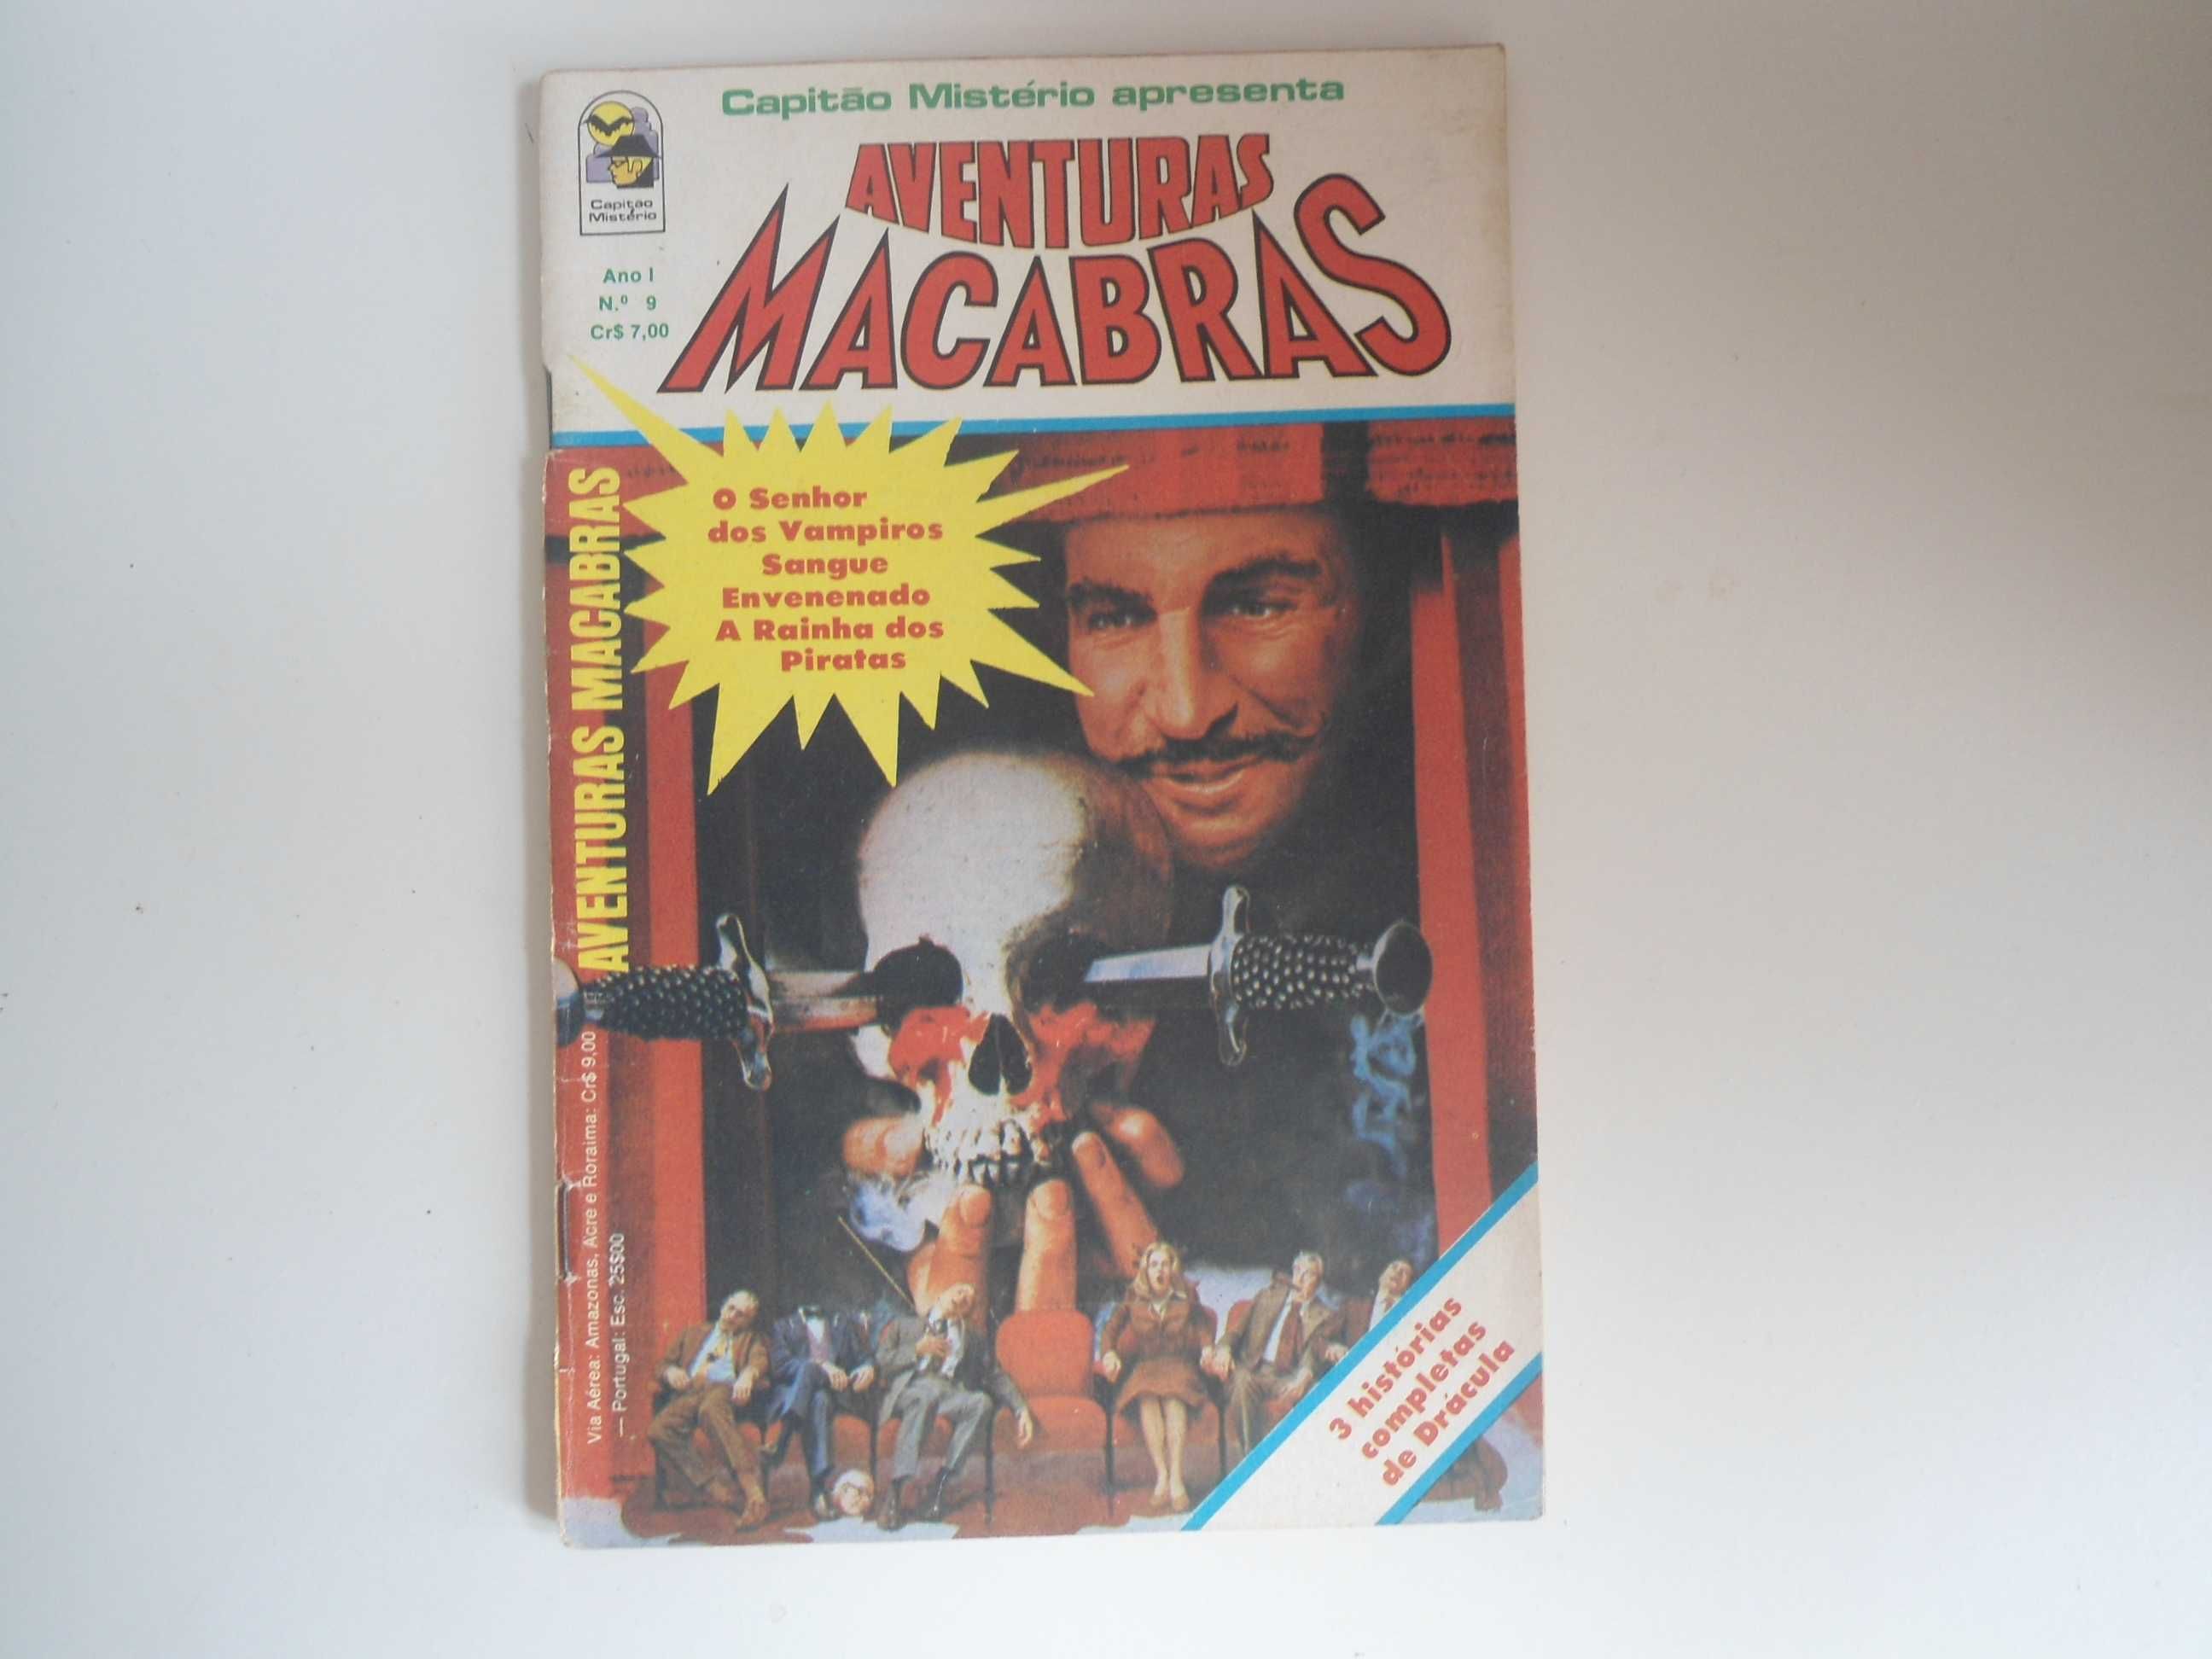 Capitão mistério apresenta Aventuras Macabras (BD)